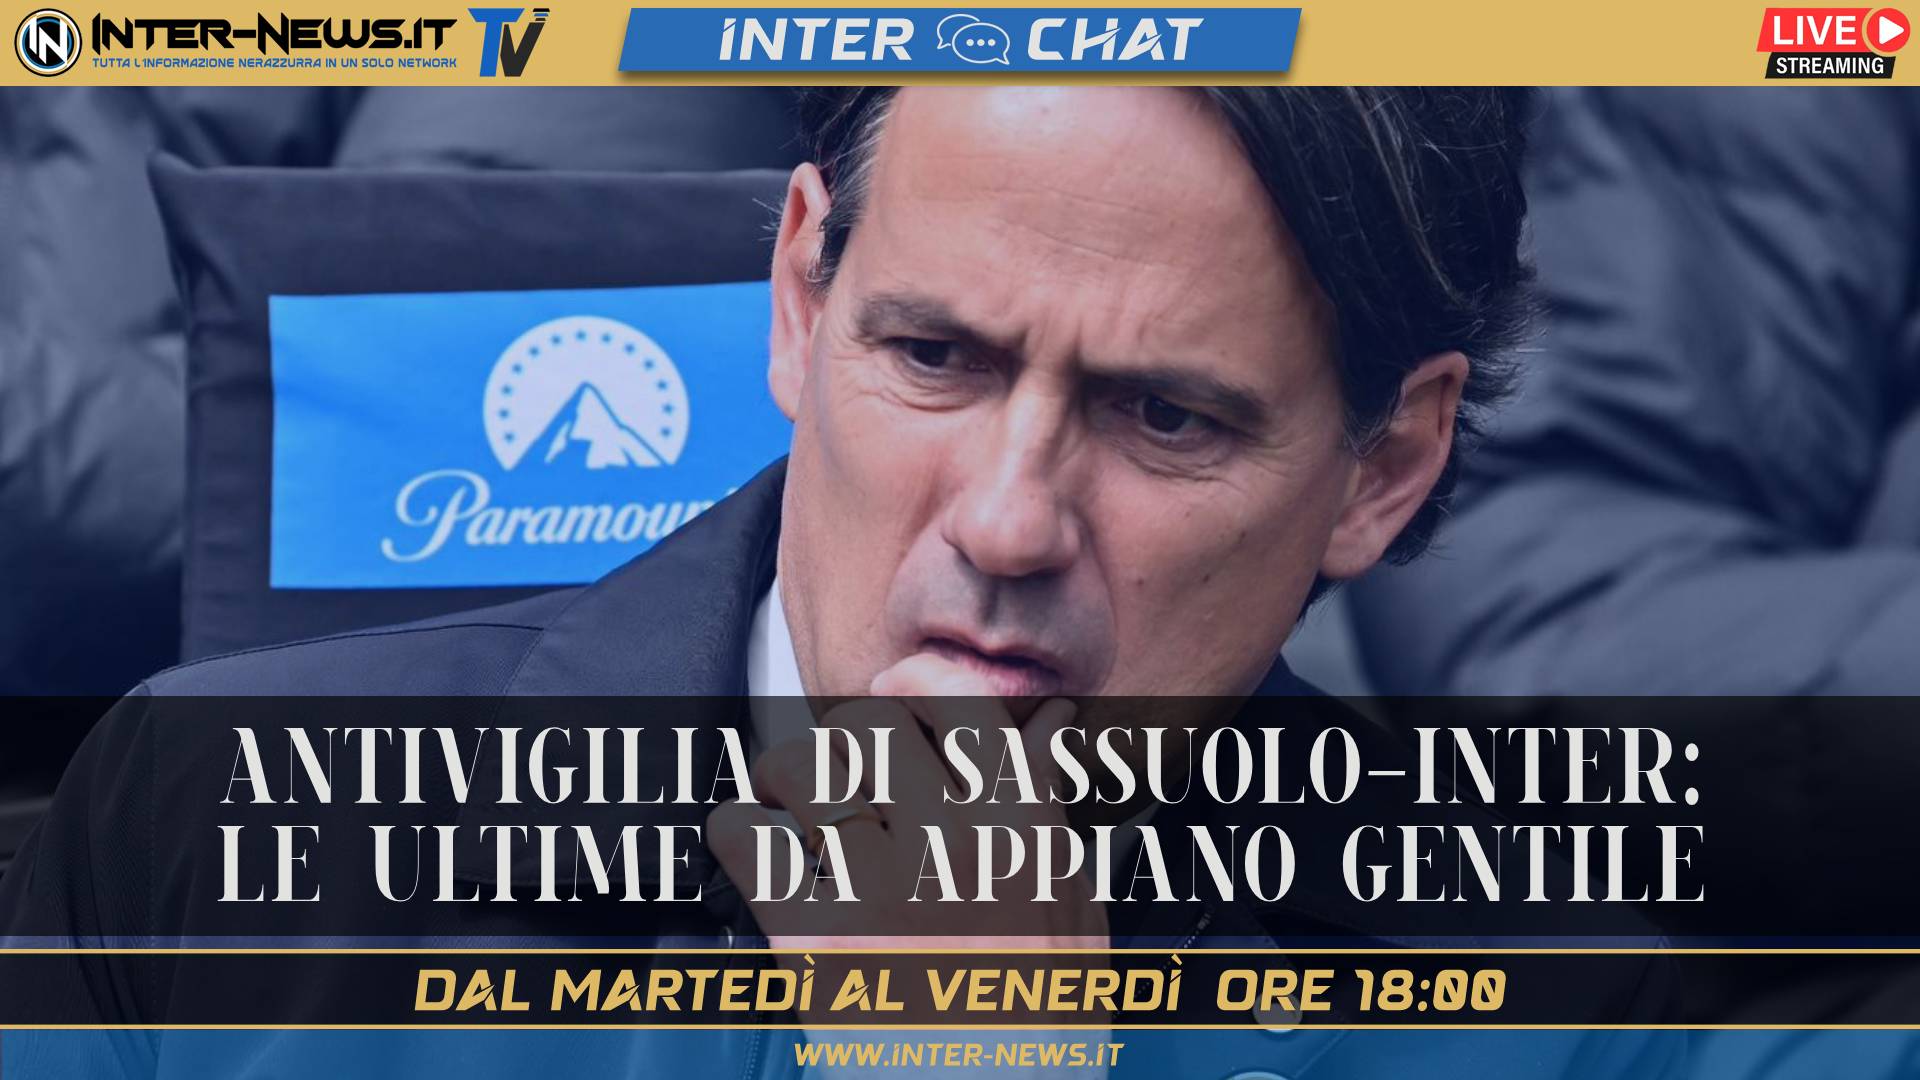 Sassuolo Inter, antivigilia: le ultime da Appiano Gentile | Inter Chat LIVE